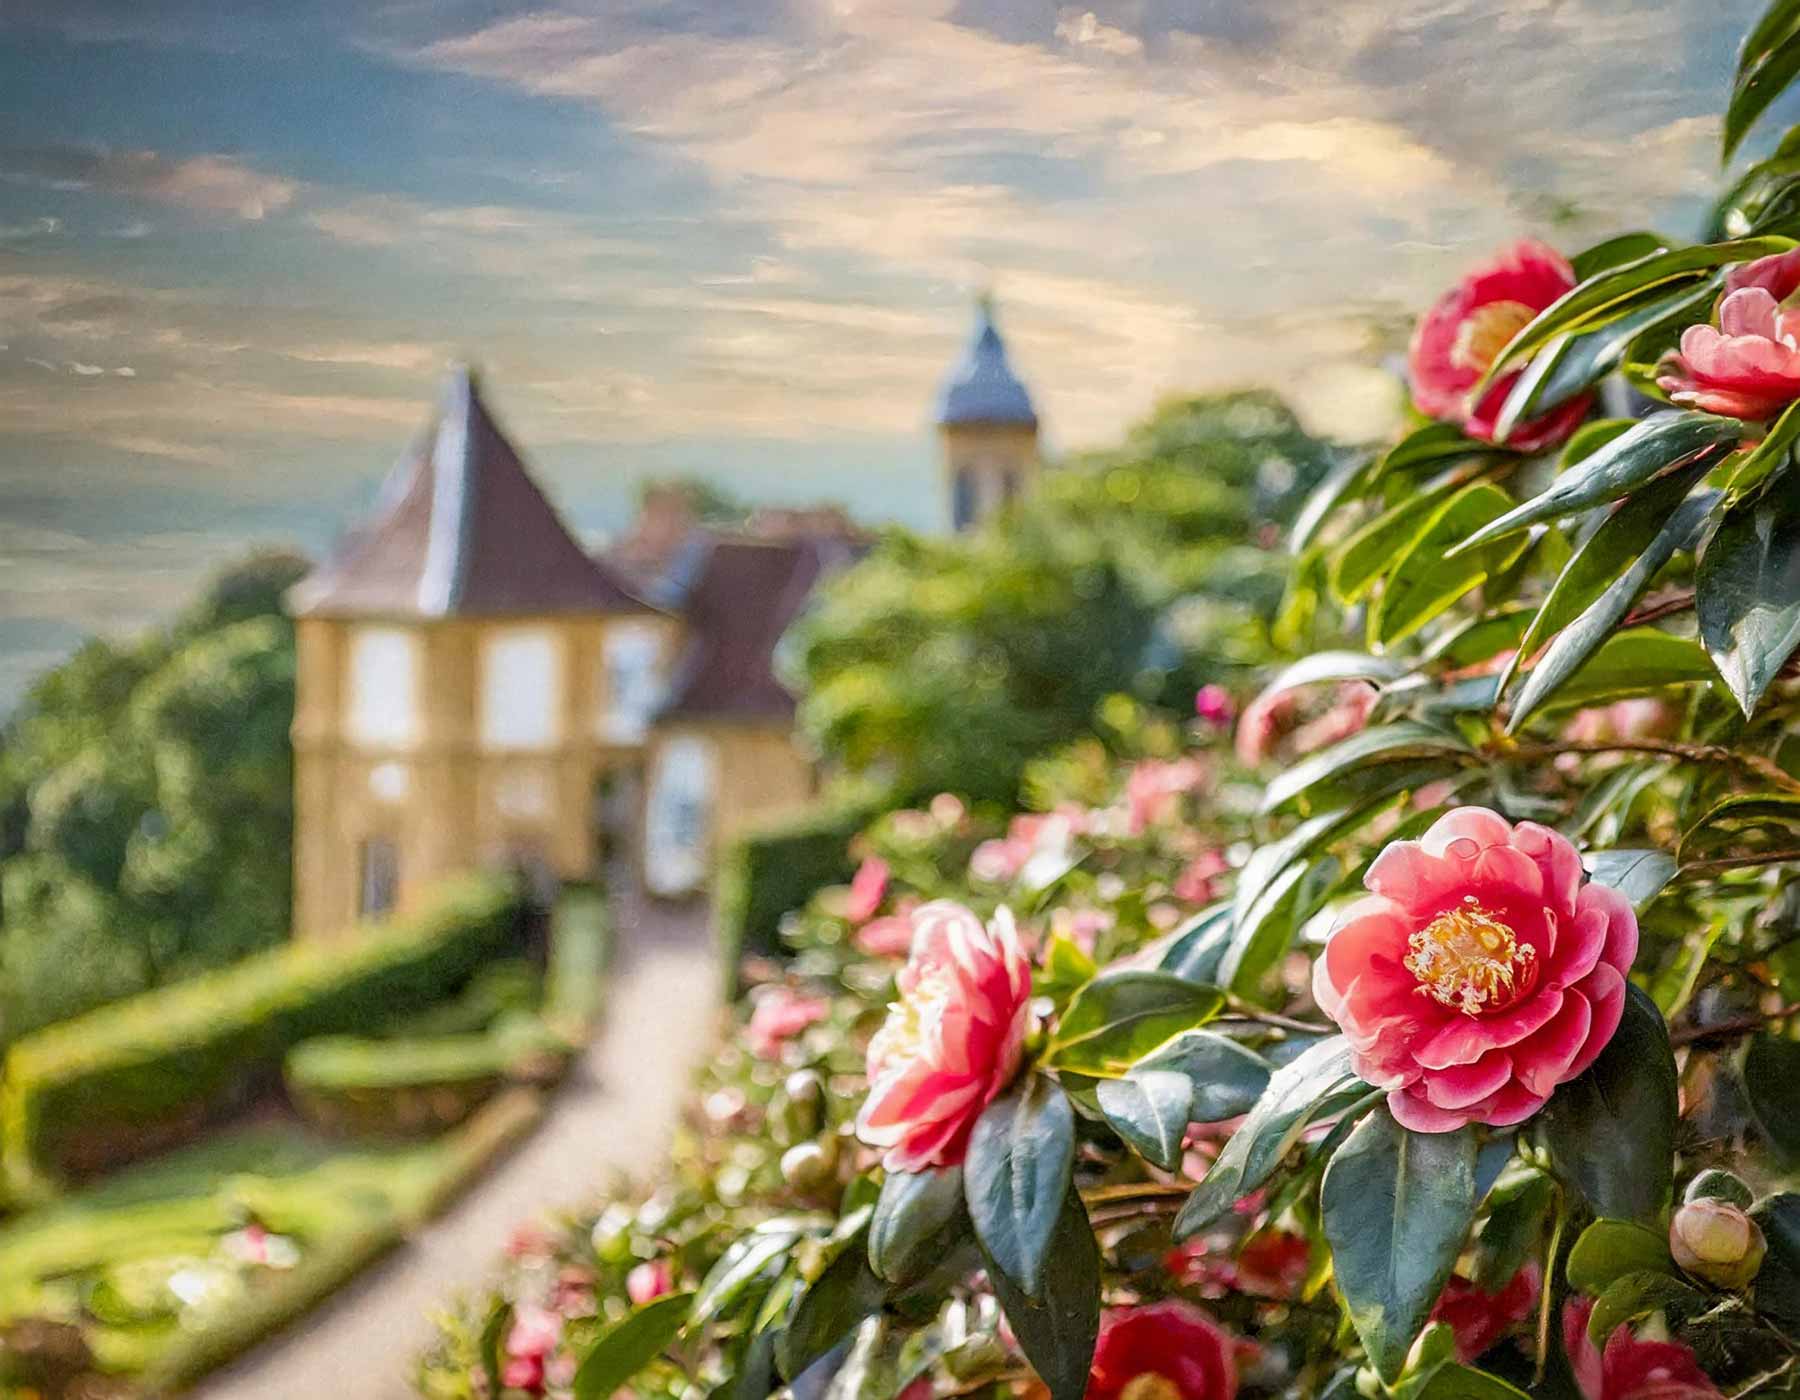 Ein malerischer Blick auf das Landschloss Zuschendorf zur Kamillenblüte, umgeben von atemberaubender Natur.